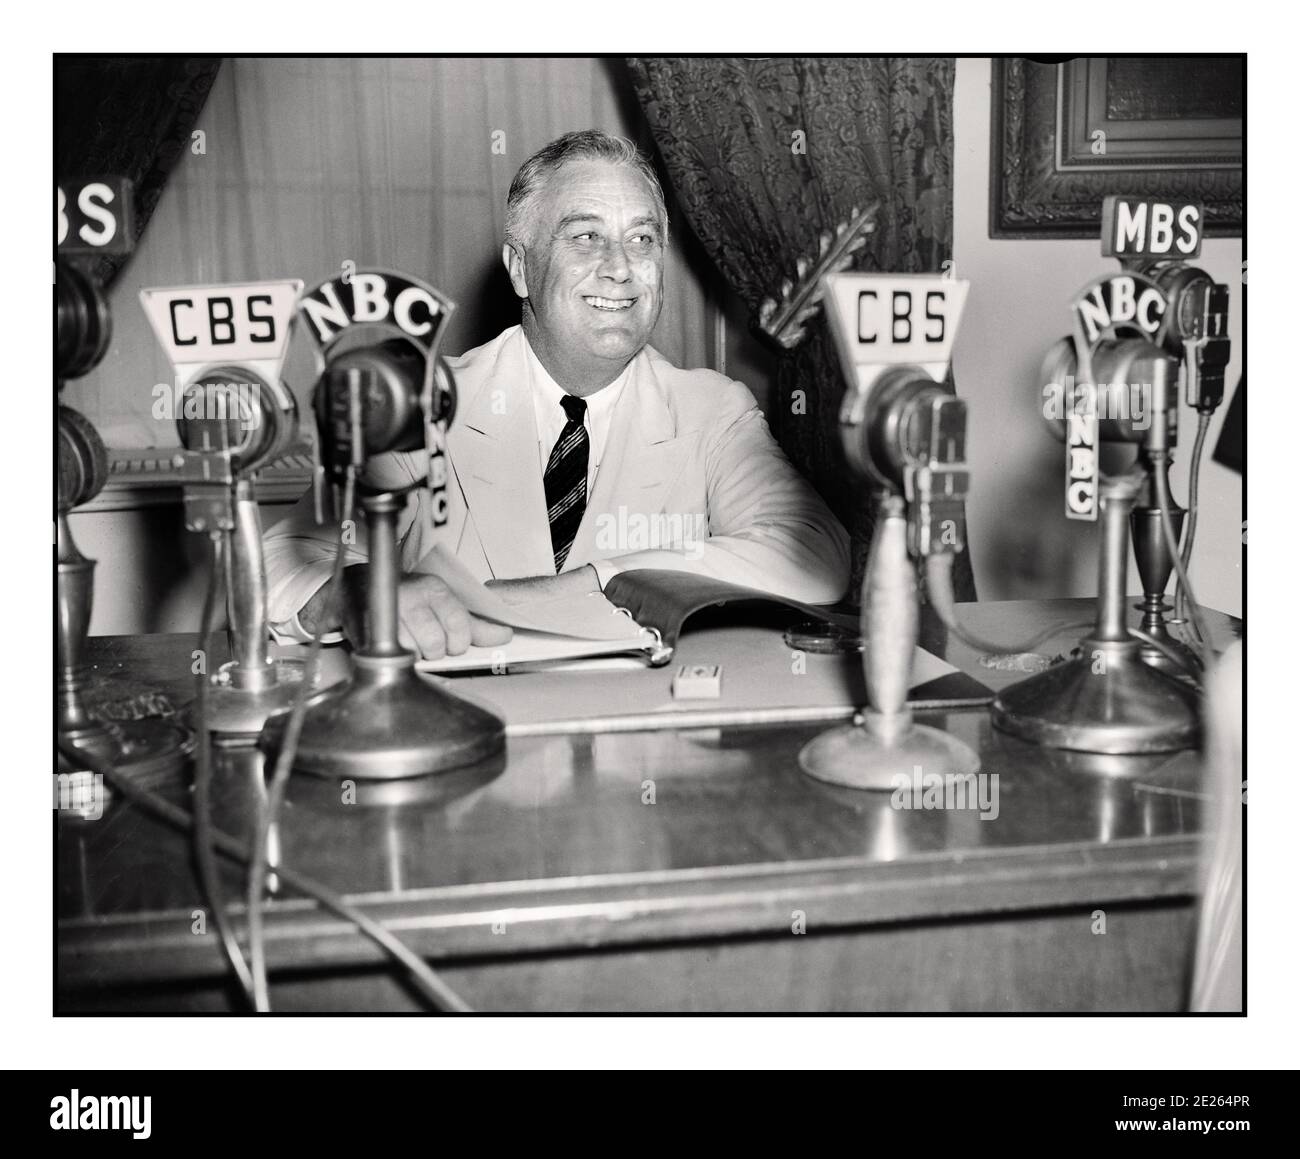 LE 1934 septembre, LE PRÉSIDENT ROOSEVELT des années 1930, Franklin D. Roosevelt, donne une émission de radio (« chat au coin du feu »). Sur son bureau, les microphones de diffusion réseau CBS et NBC. Franklin Delano Roosevelt Sr., souvent cité par ses initiales FDR, était un homme d'État américain et un dirigeant politique qui a servi comme 32e président des États-Unis de 1933 à sa mort en 1945. Banque D'Images